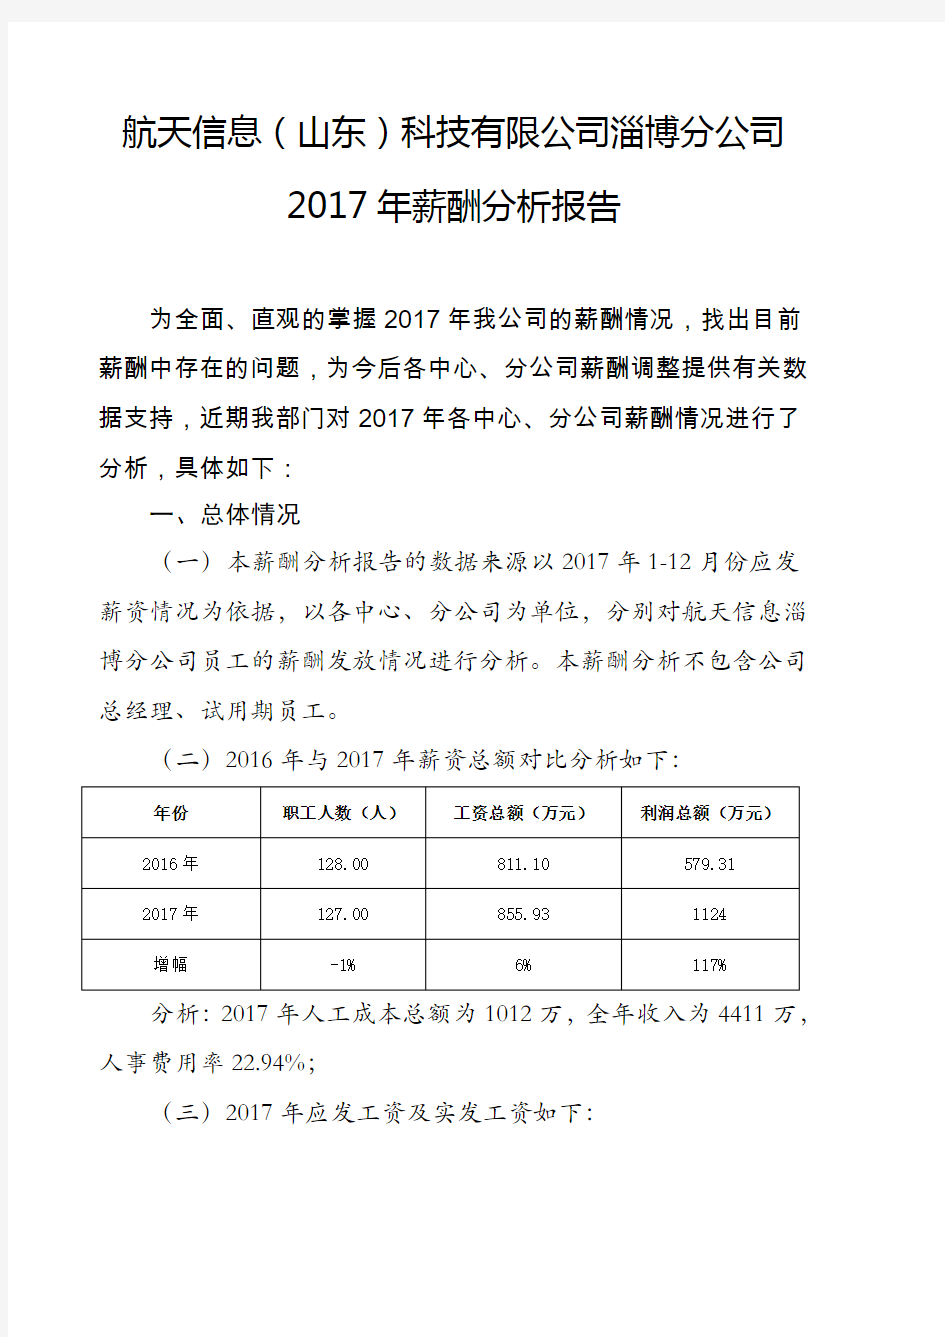 2017年薪酬分析报告